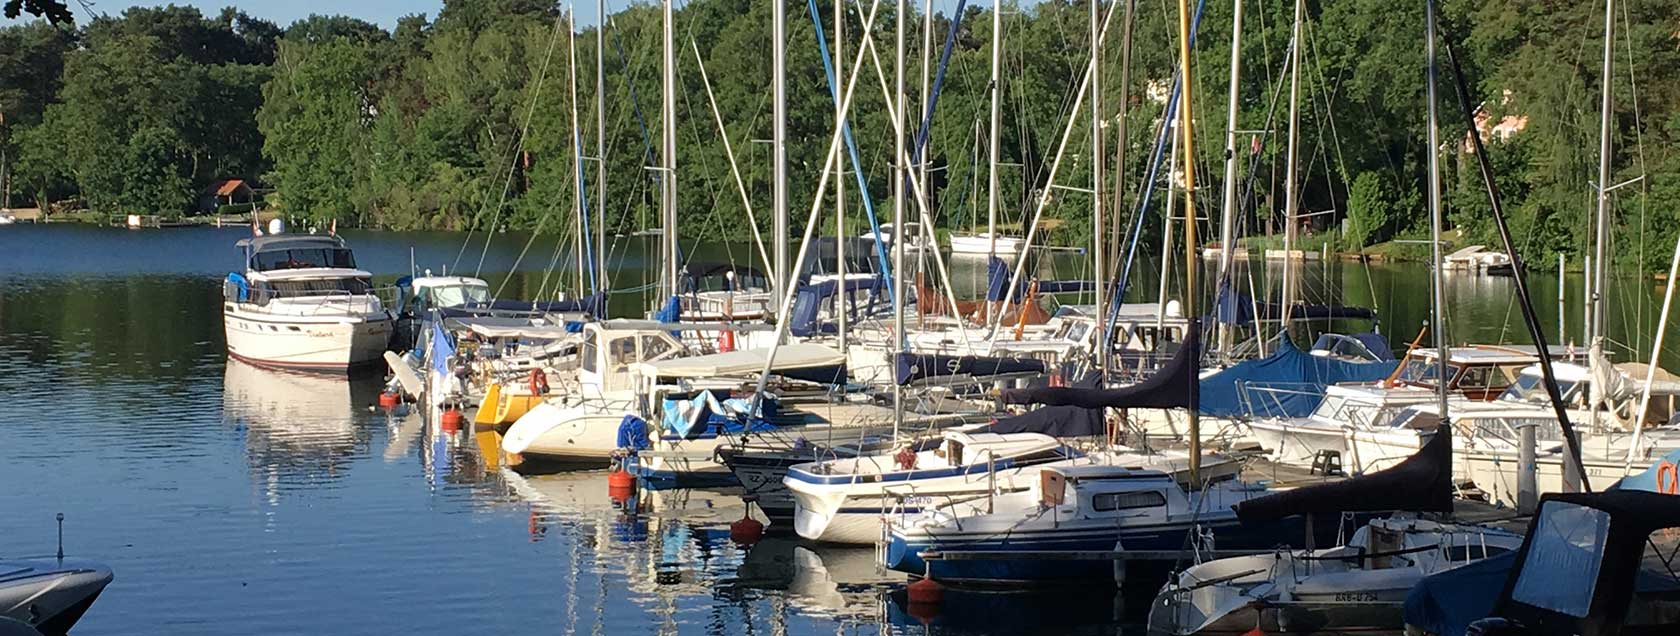 Immobilienmakler Bad Saarow - Boote auf dem See